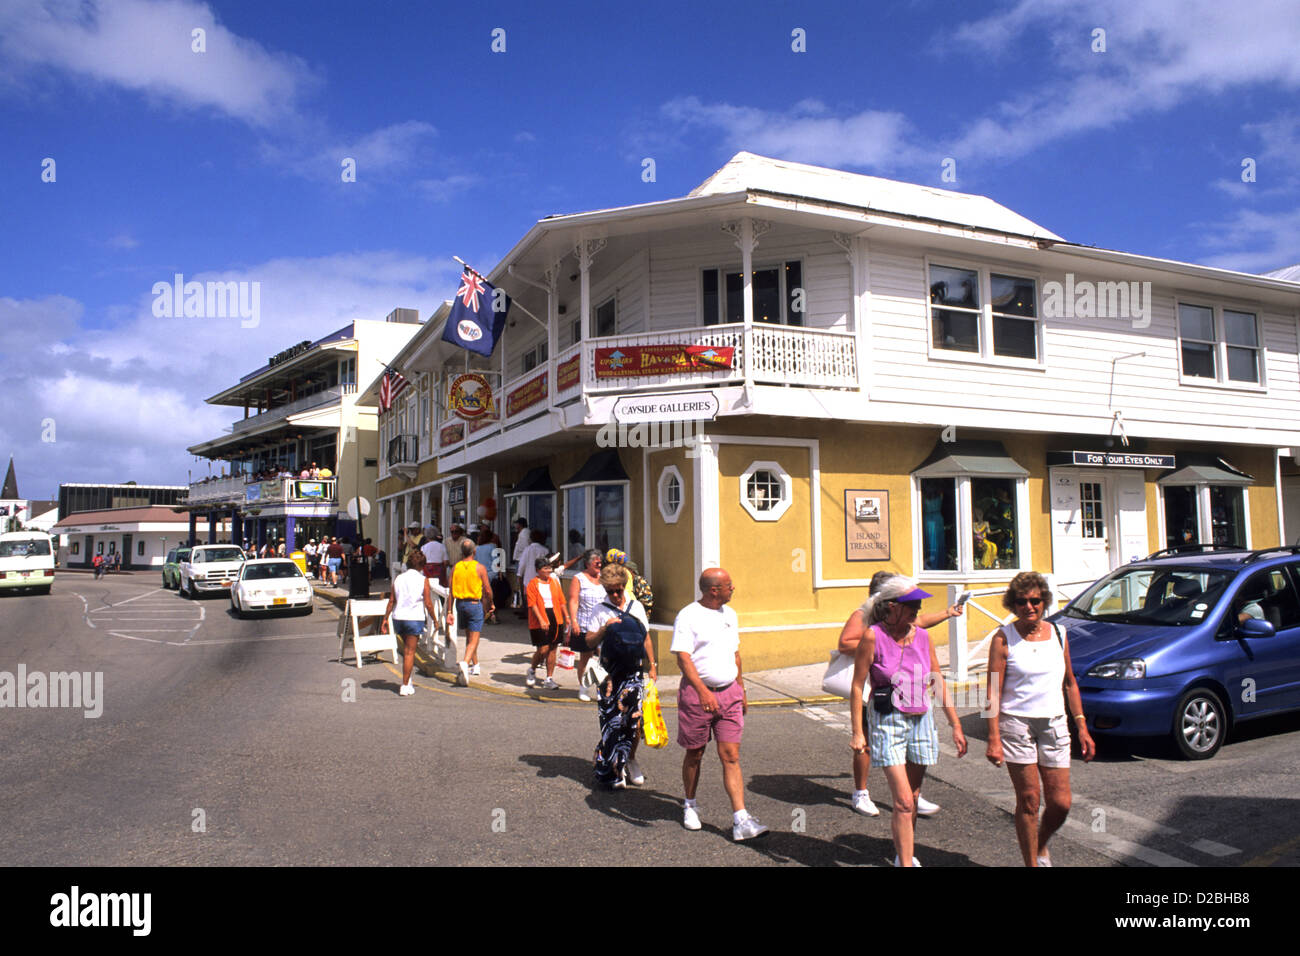 Îles Caïmans. L'île Grand Cayman. George Town. La rue de l'Église du sud Banque D'Images